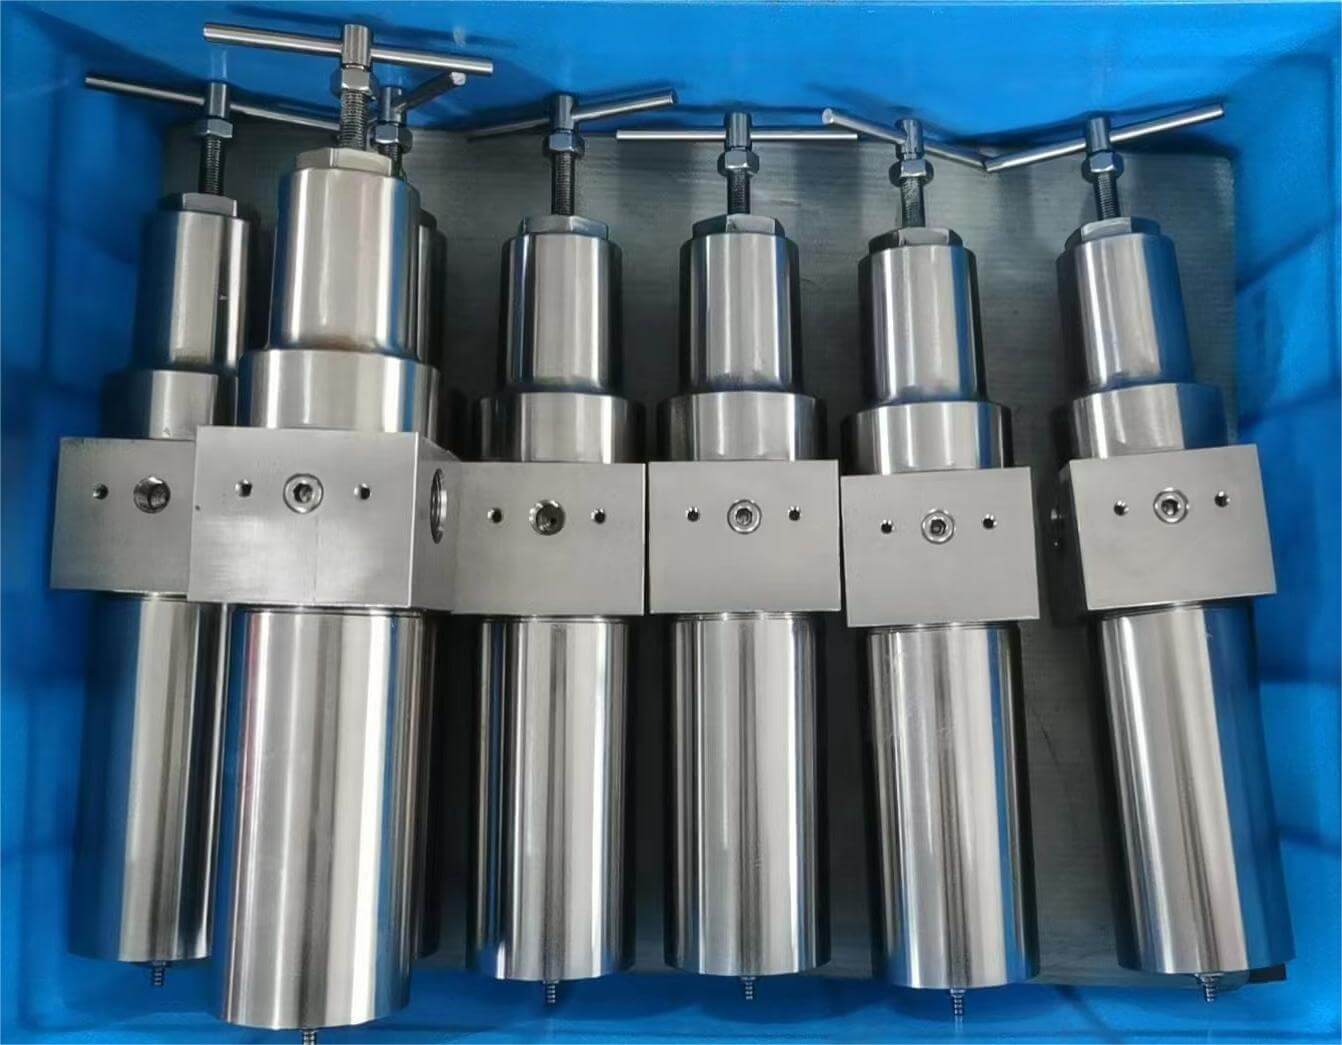 QFRH High pressure stainless steel air filter regulator 2